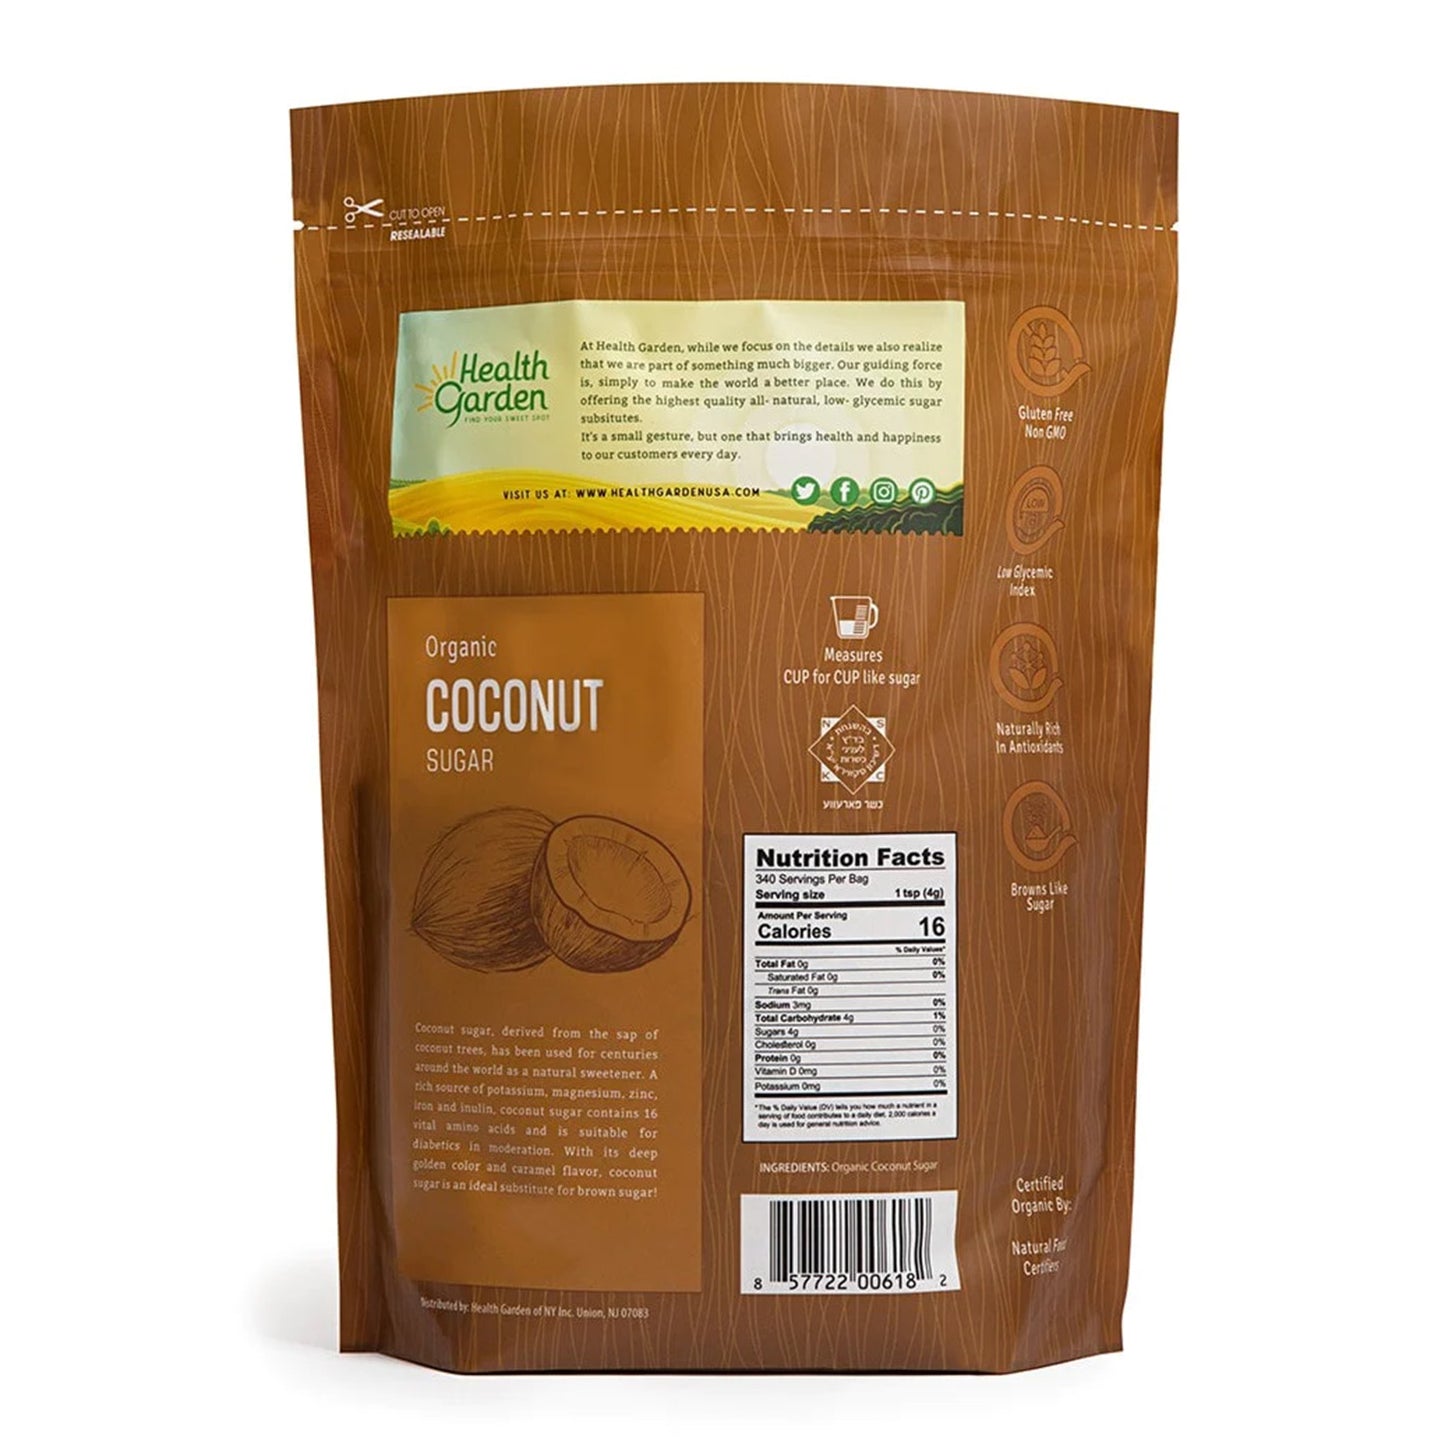 Health Garden Organic Coconut Sugar: Dulzura Sostenible y Sabrosa de la Natura | ProHealth Shop [Panamá]